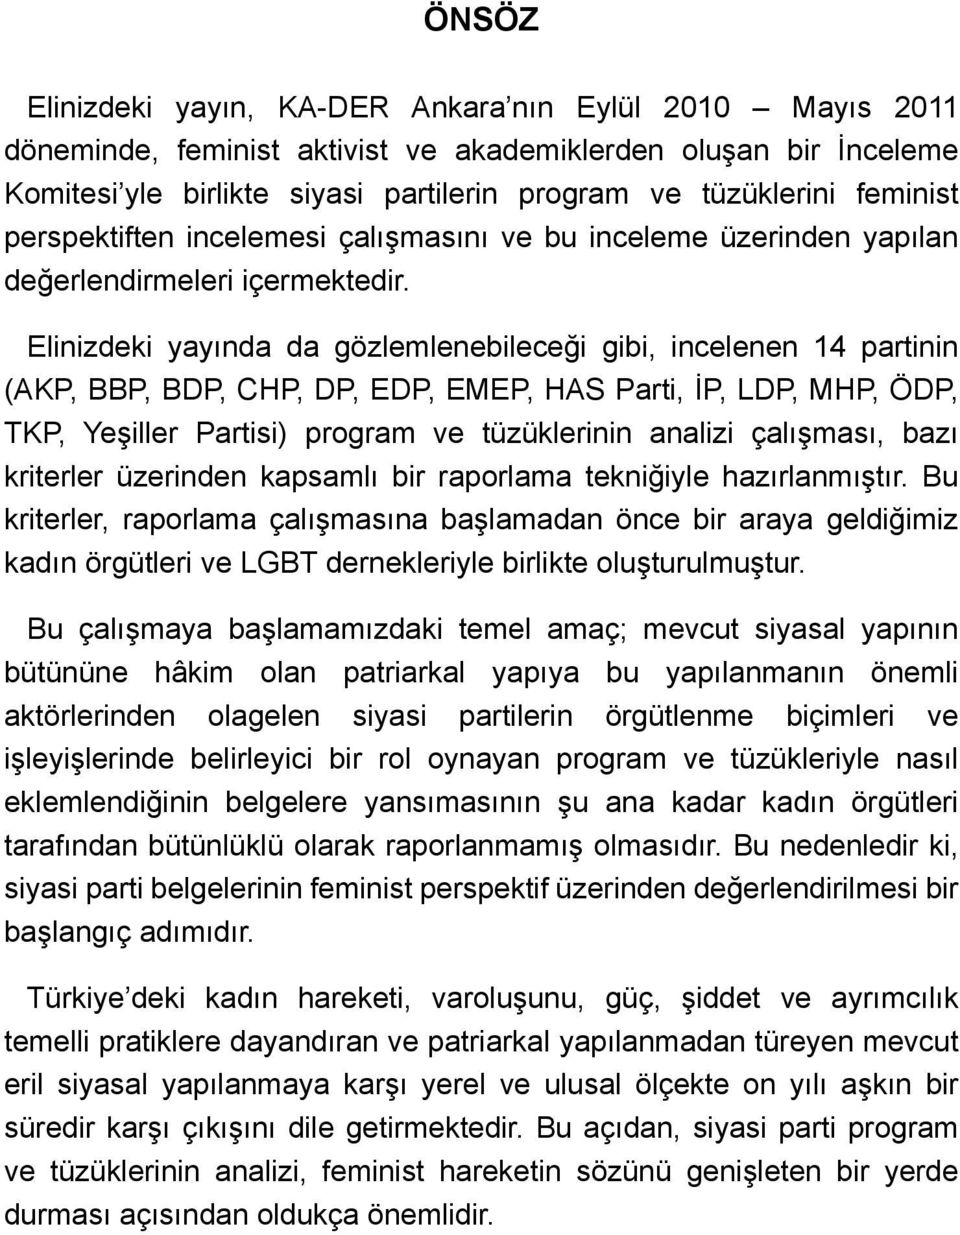 Elinizdeki yayında da gözlemlenebileceği gibi, incelenen 14 partinin (AKP, BBP, BDP, CHP, DP, EDP, EMEP, HAS Parti, İP, LDP, MHP, ÖDP, TKP, Yeşiller Partisi) program ve tüzüklerinin analizi